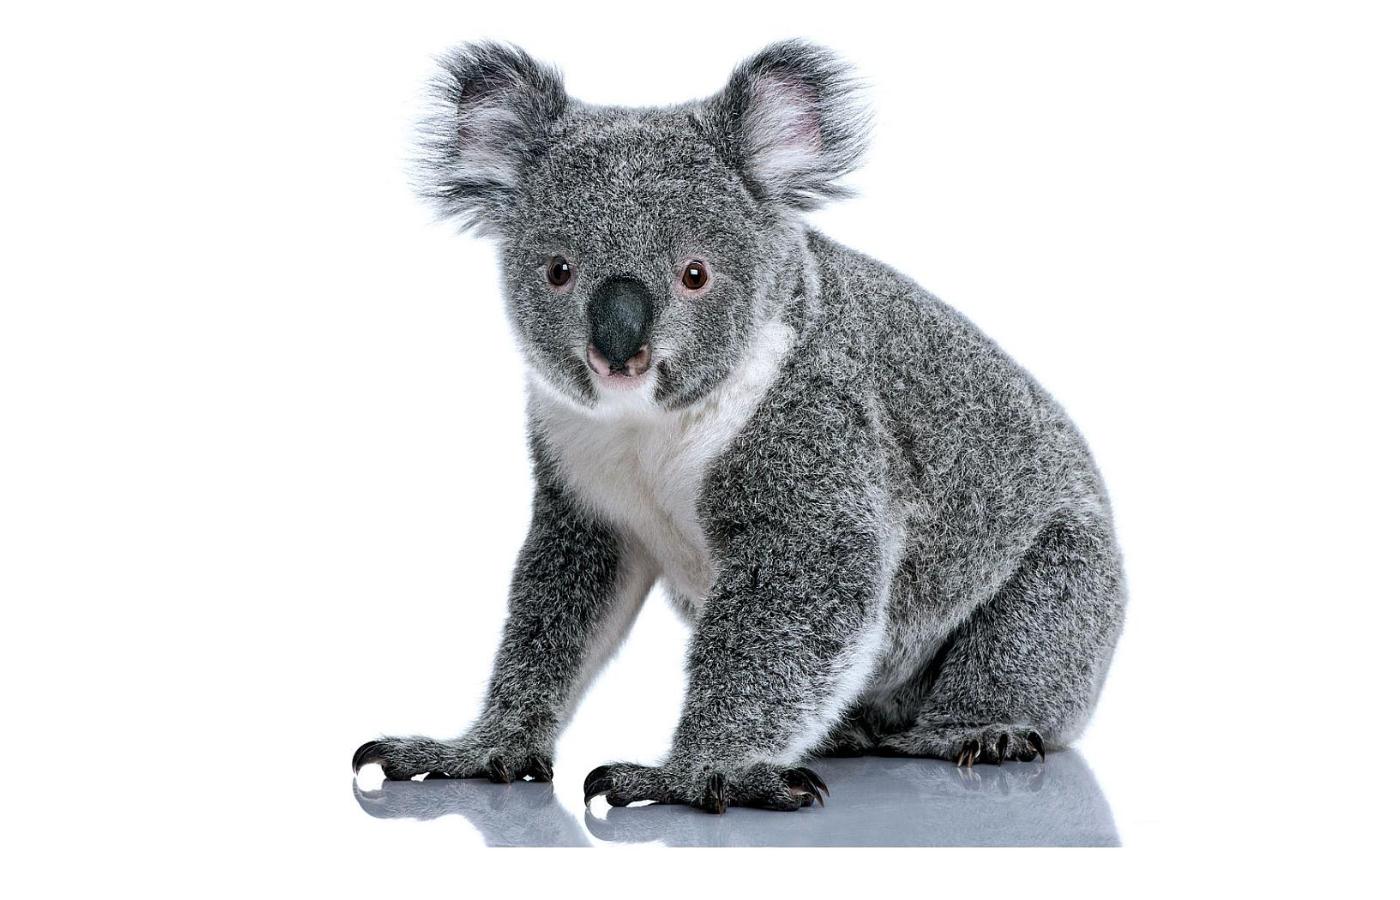 Nawet koala cierpią z powodu zmian klimatu. Upał przekraczający 36 stopni Celsjusza jest dla nich nie do wytrzymania.